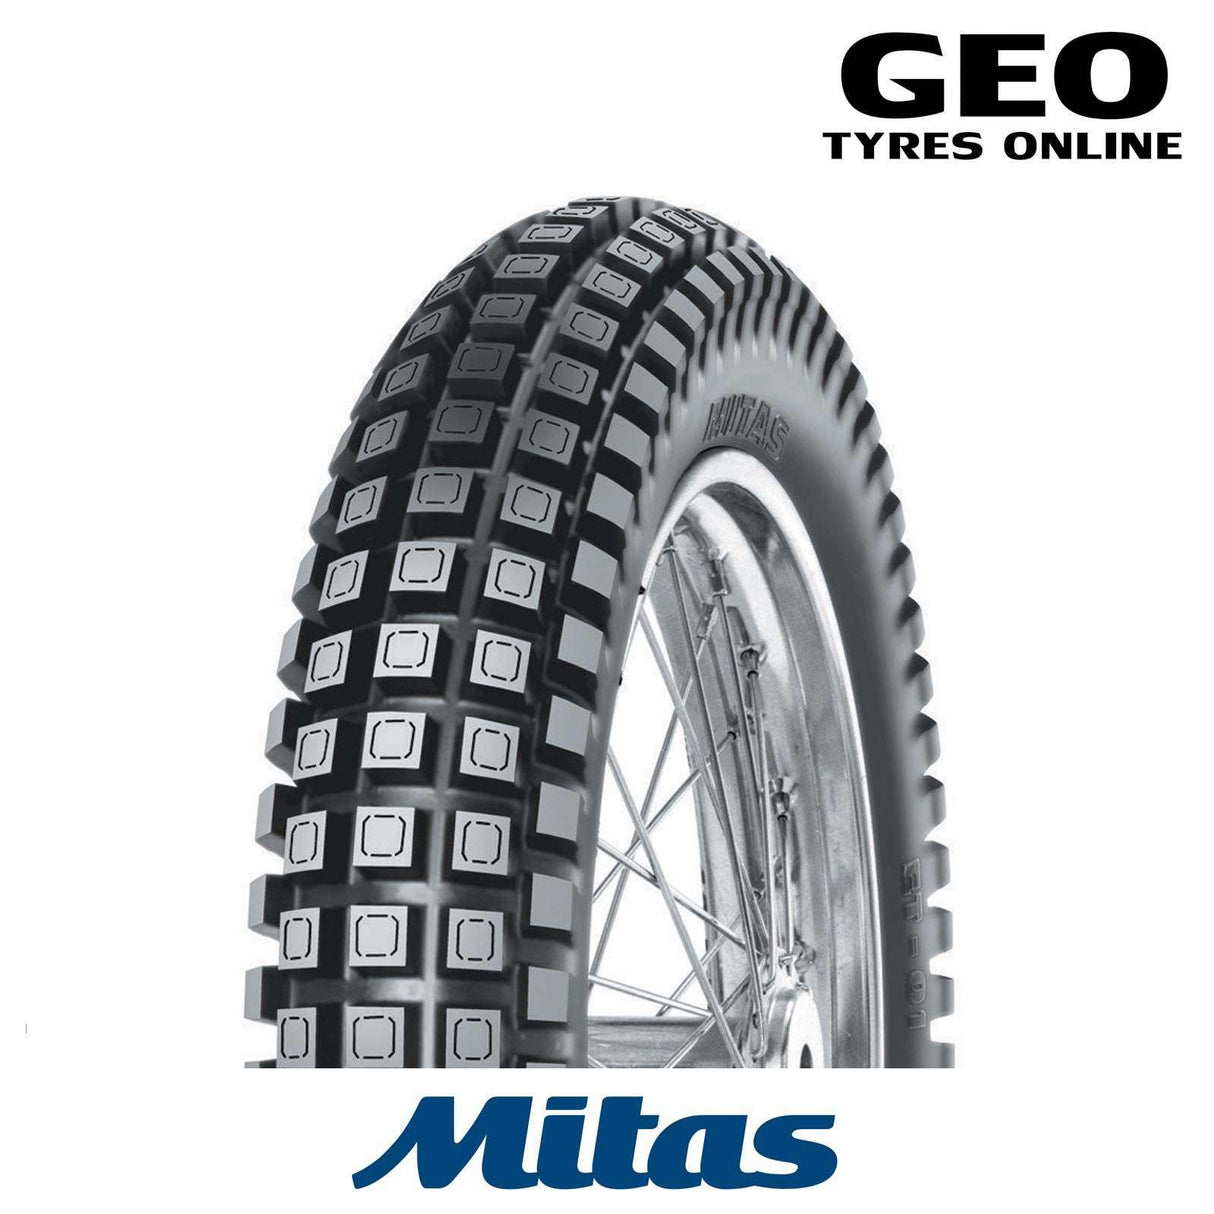 4.00-18 ET01 Trials Mitas Enduro Rear Tyre - GEO Tyres Online